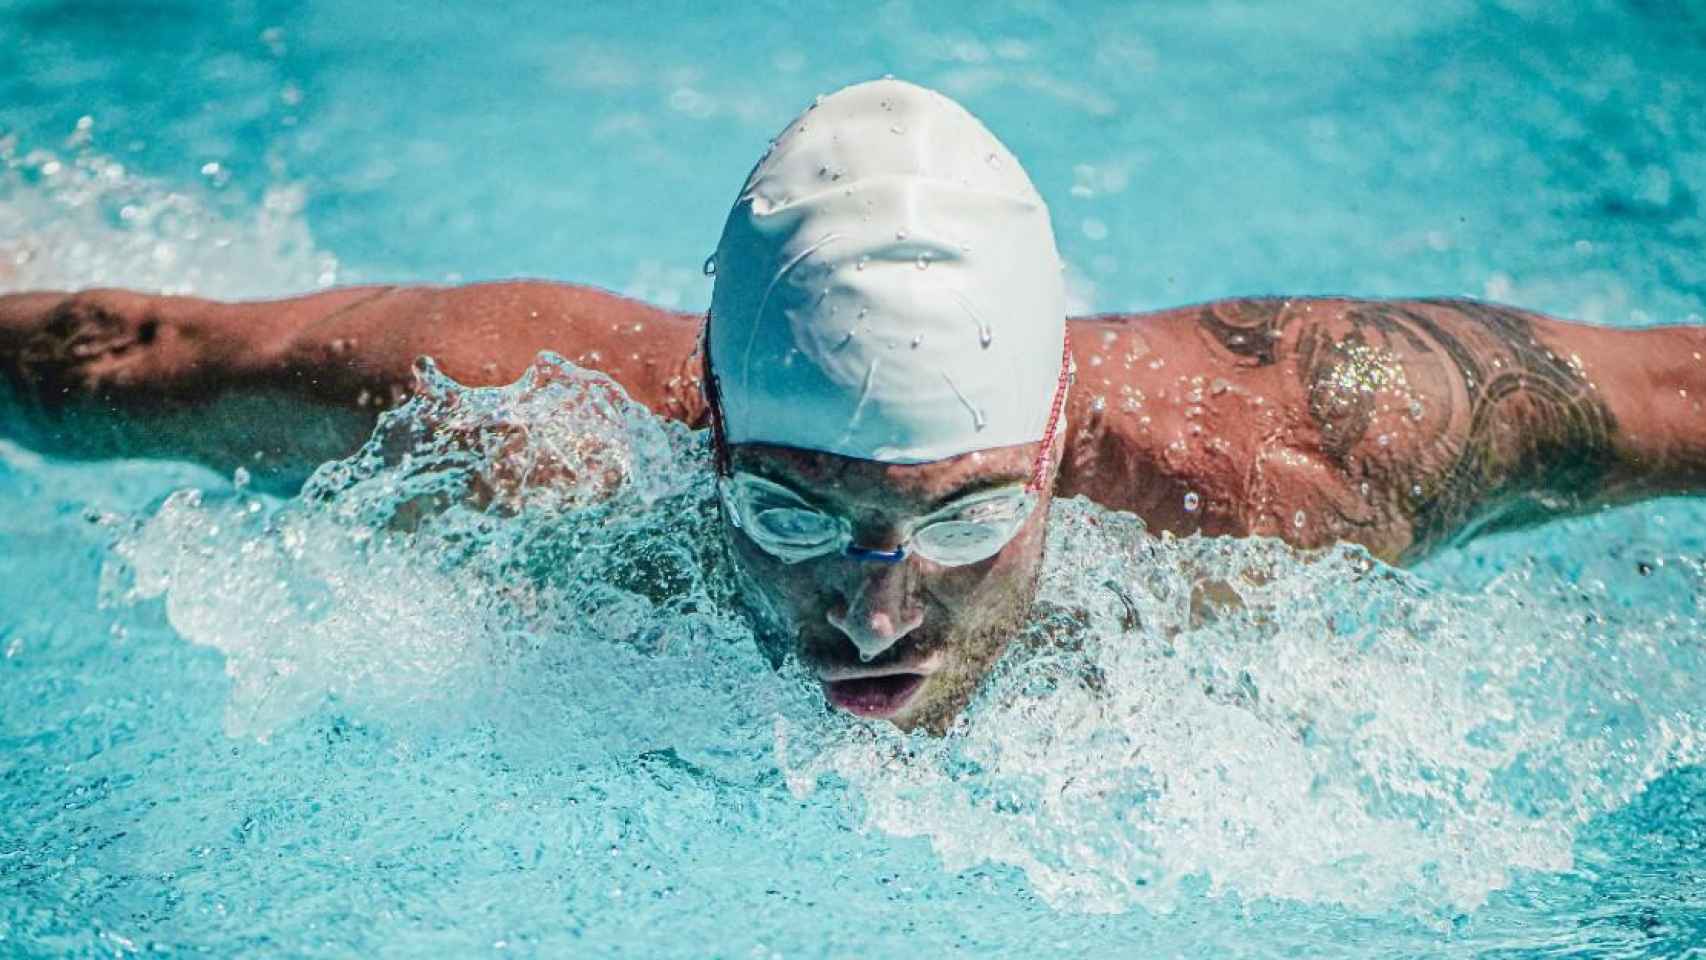 El Corte Inglés: Auriculares resistentes al agua perfectos para nadar y  otros modelos deportivos